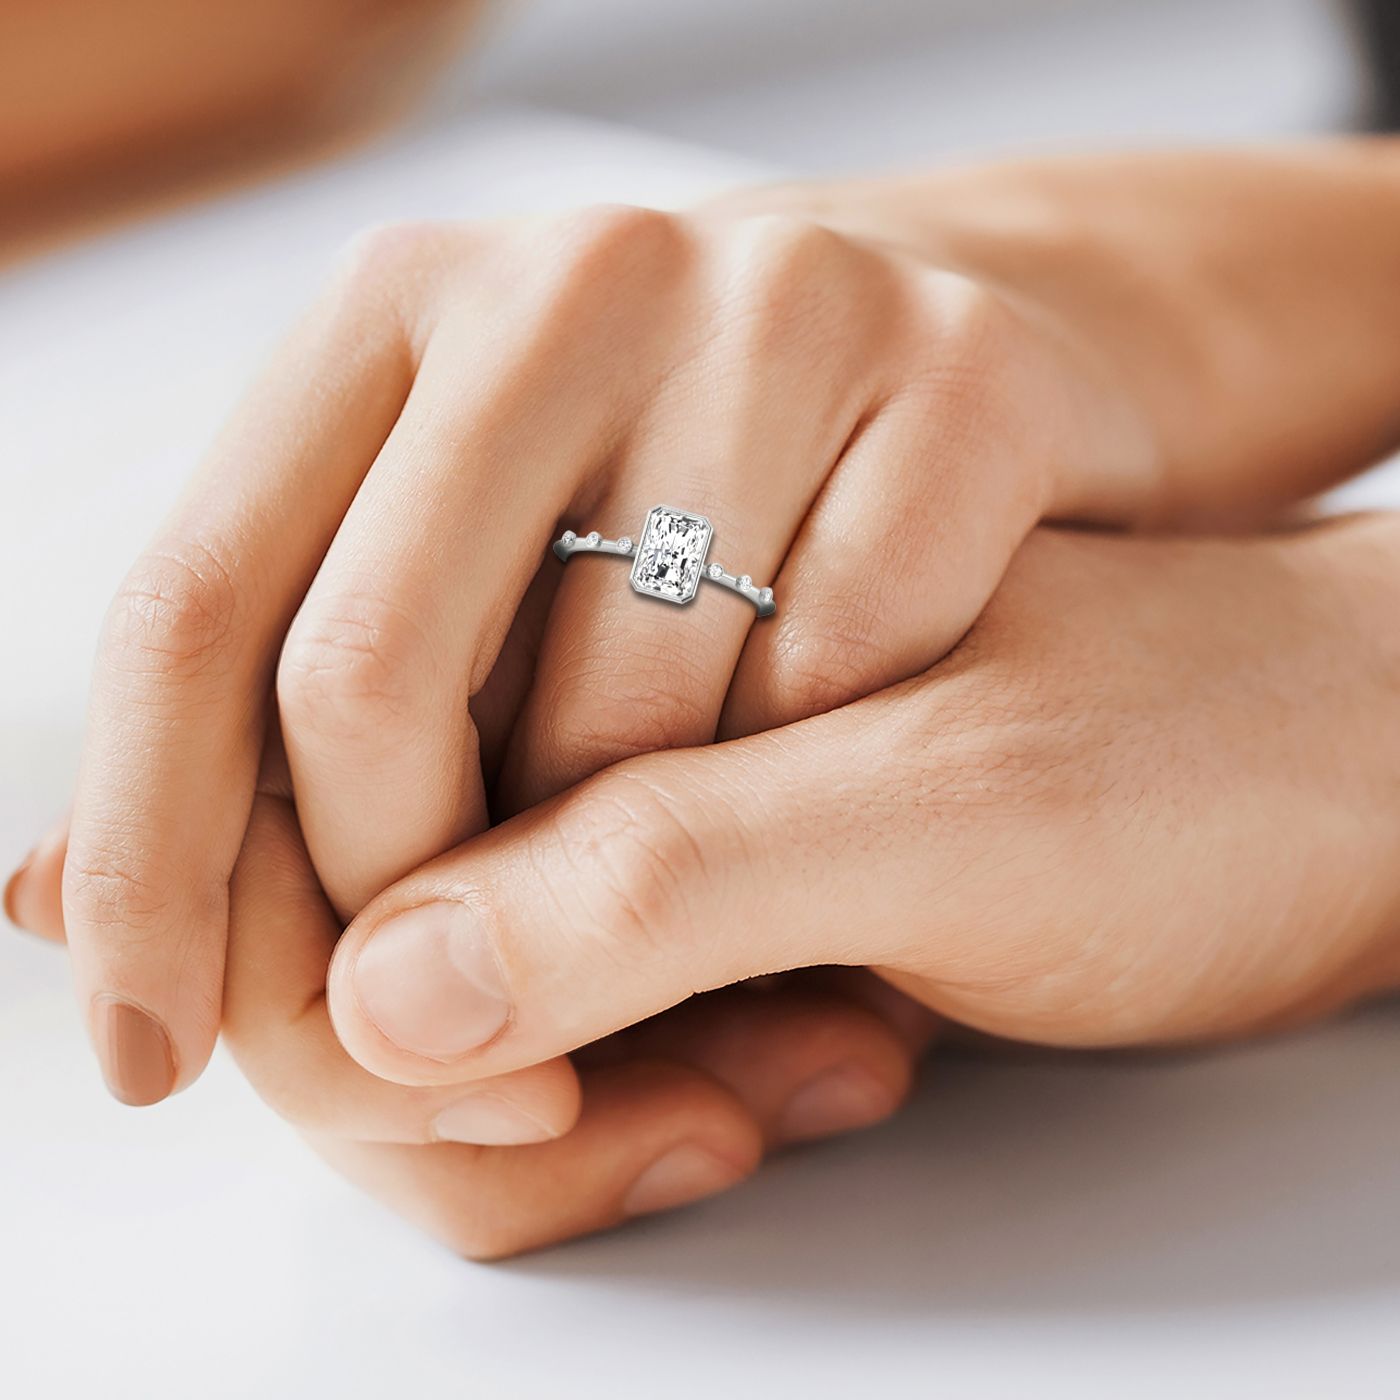 Plat Bezel Set Radiant Engagement Ring With 6 Bezel Set Round Diamonds On Shank